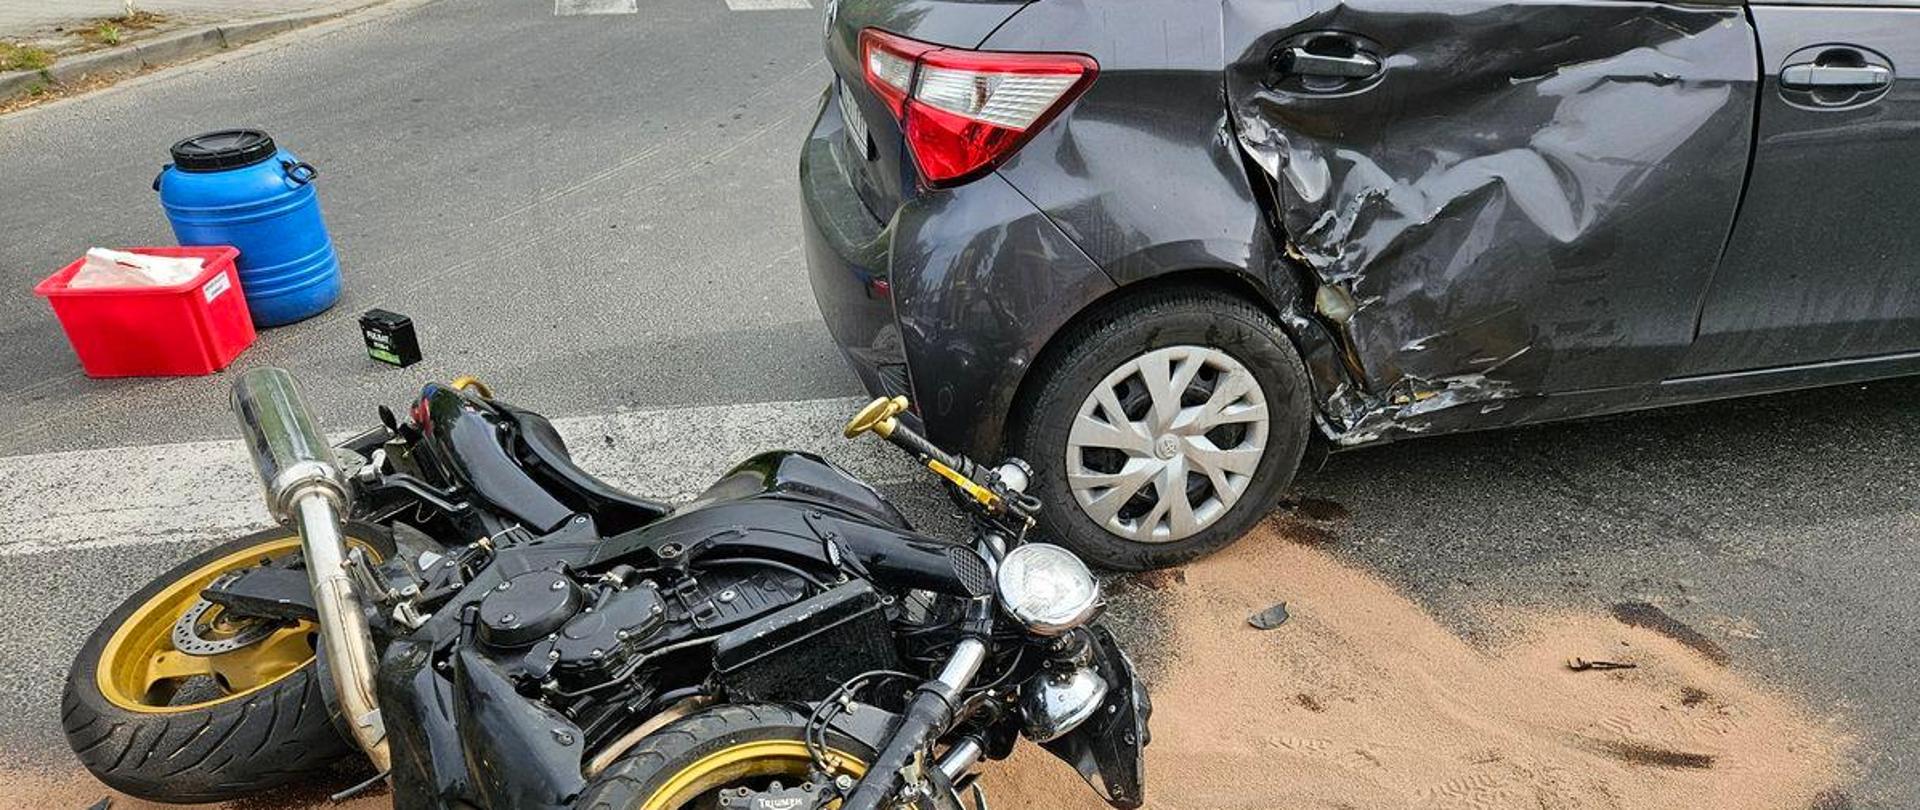 Motocykl na drodze oraz uszkodzony samochód osobowy